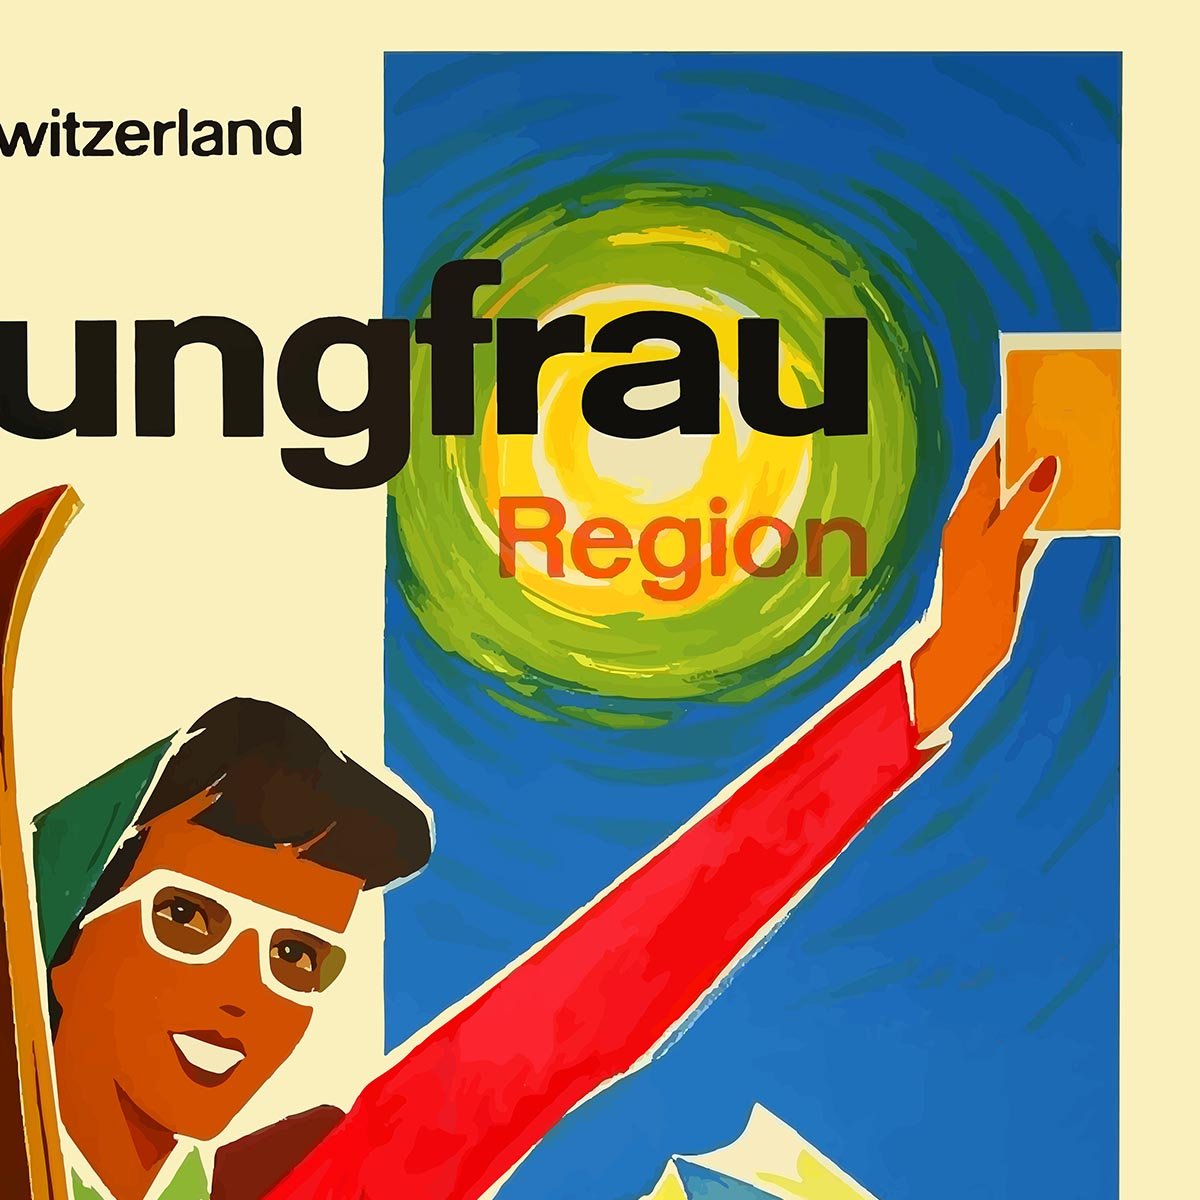 Switzerland Skiing Travel Poster